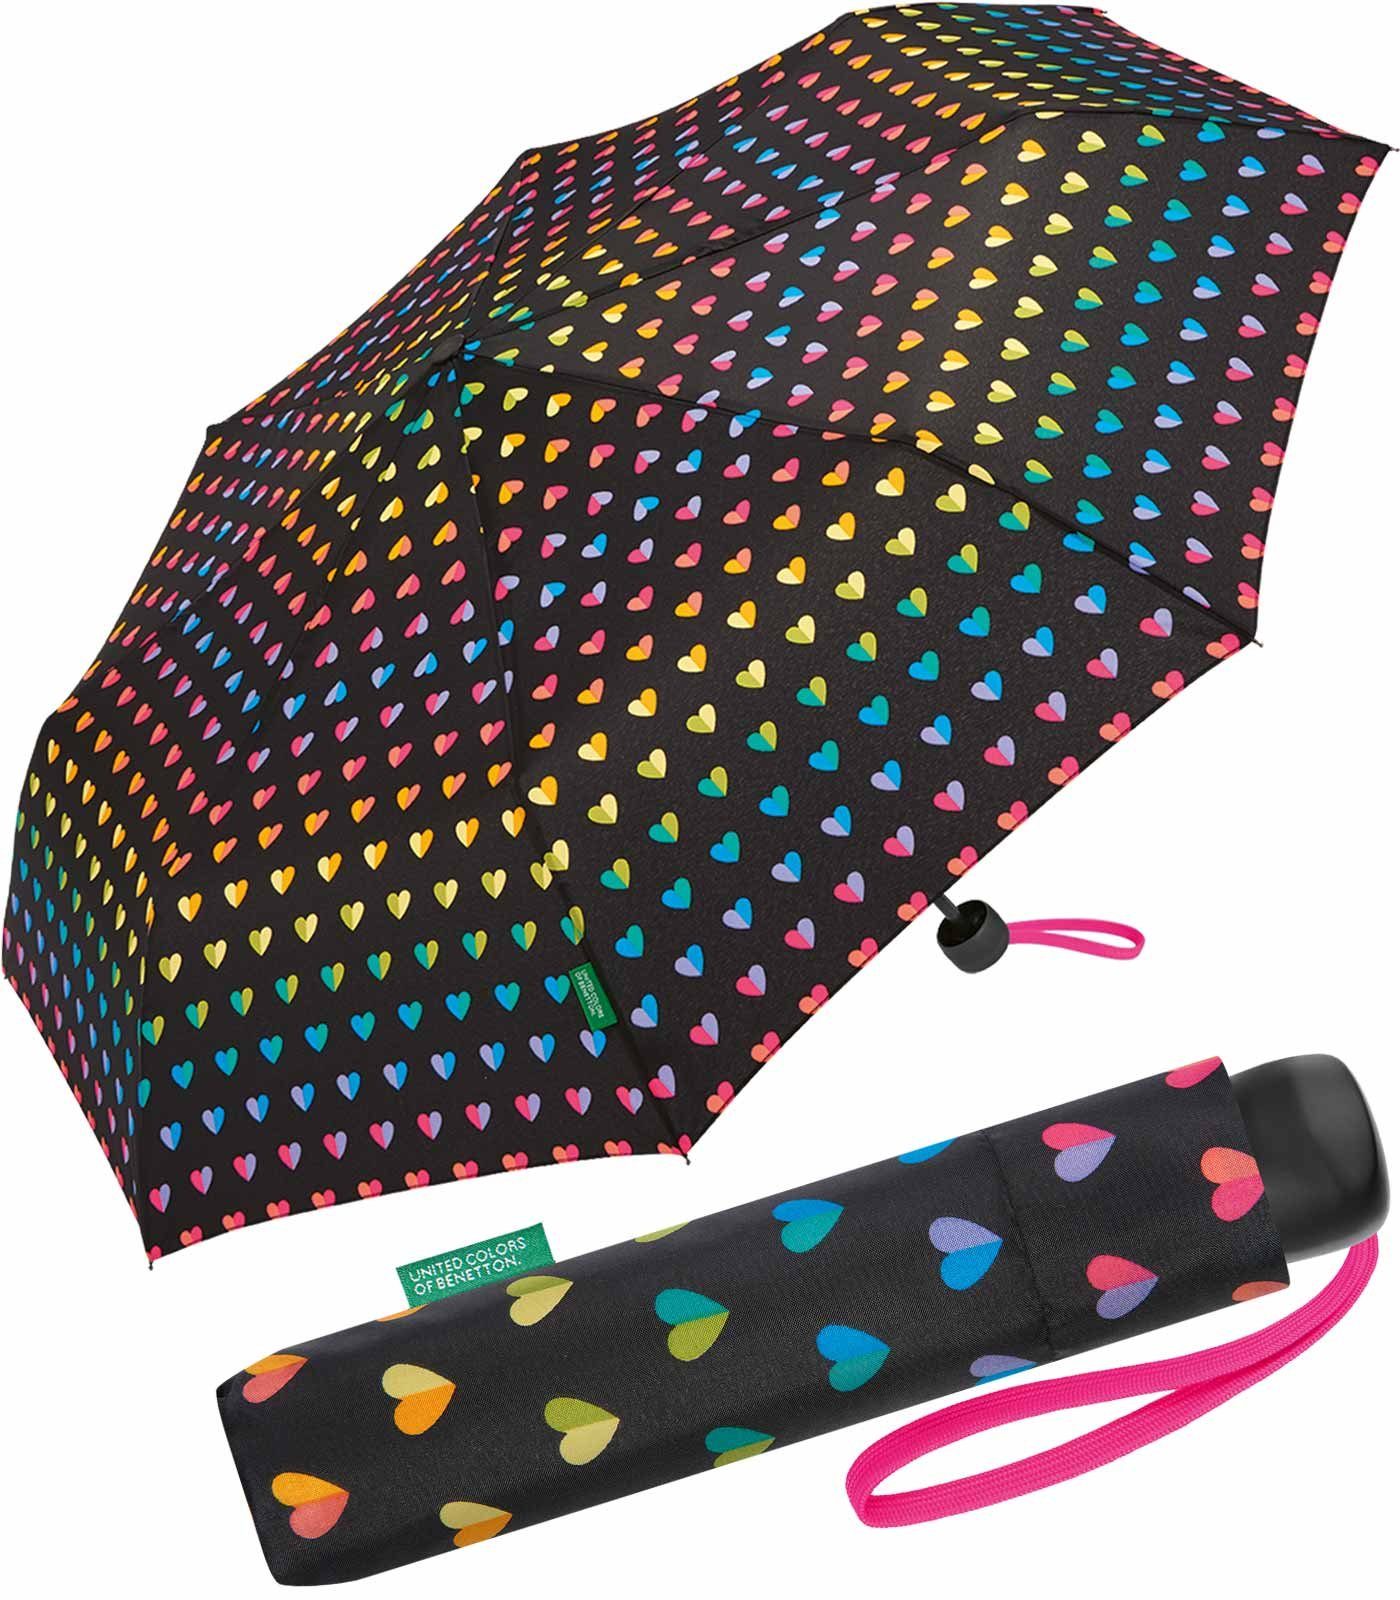 United Colors of Benetton Langregenschirm stabiler, manueller Taschenschirm mit Handöffner, mit regenbogen-farbigem Herzen-Muster